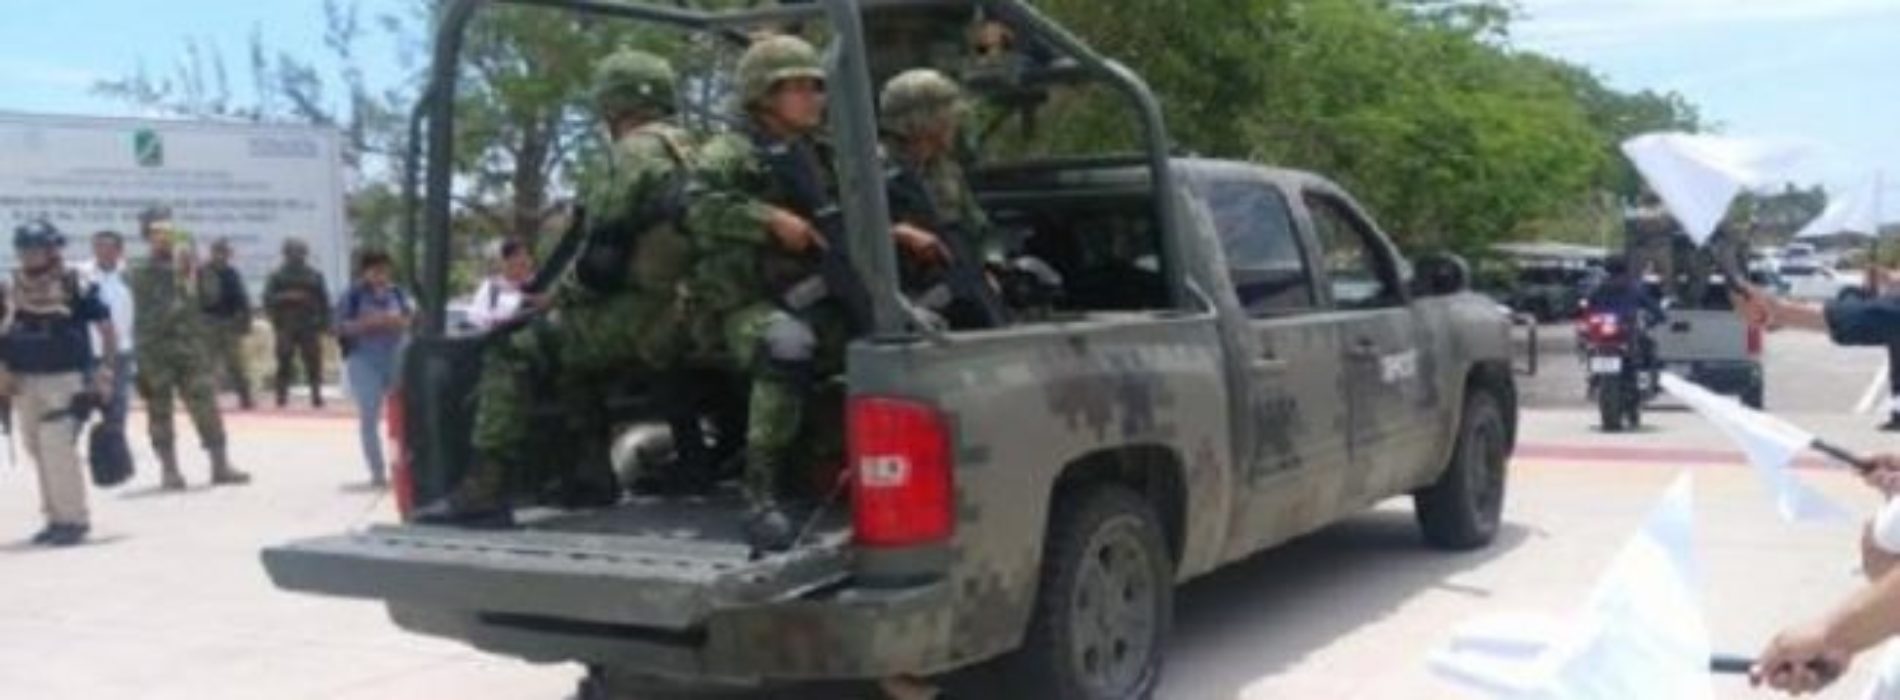 Acciones de “Fuerza Especial de Seguridad Oaxaca” apegadas a
la Ley y respetando Derechos Humanos